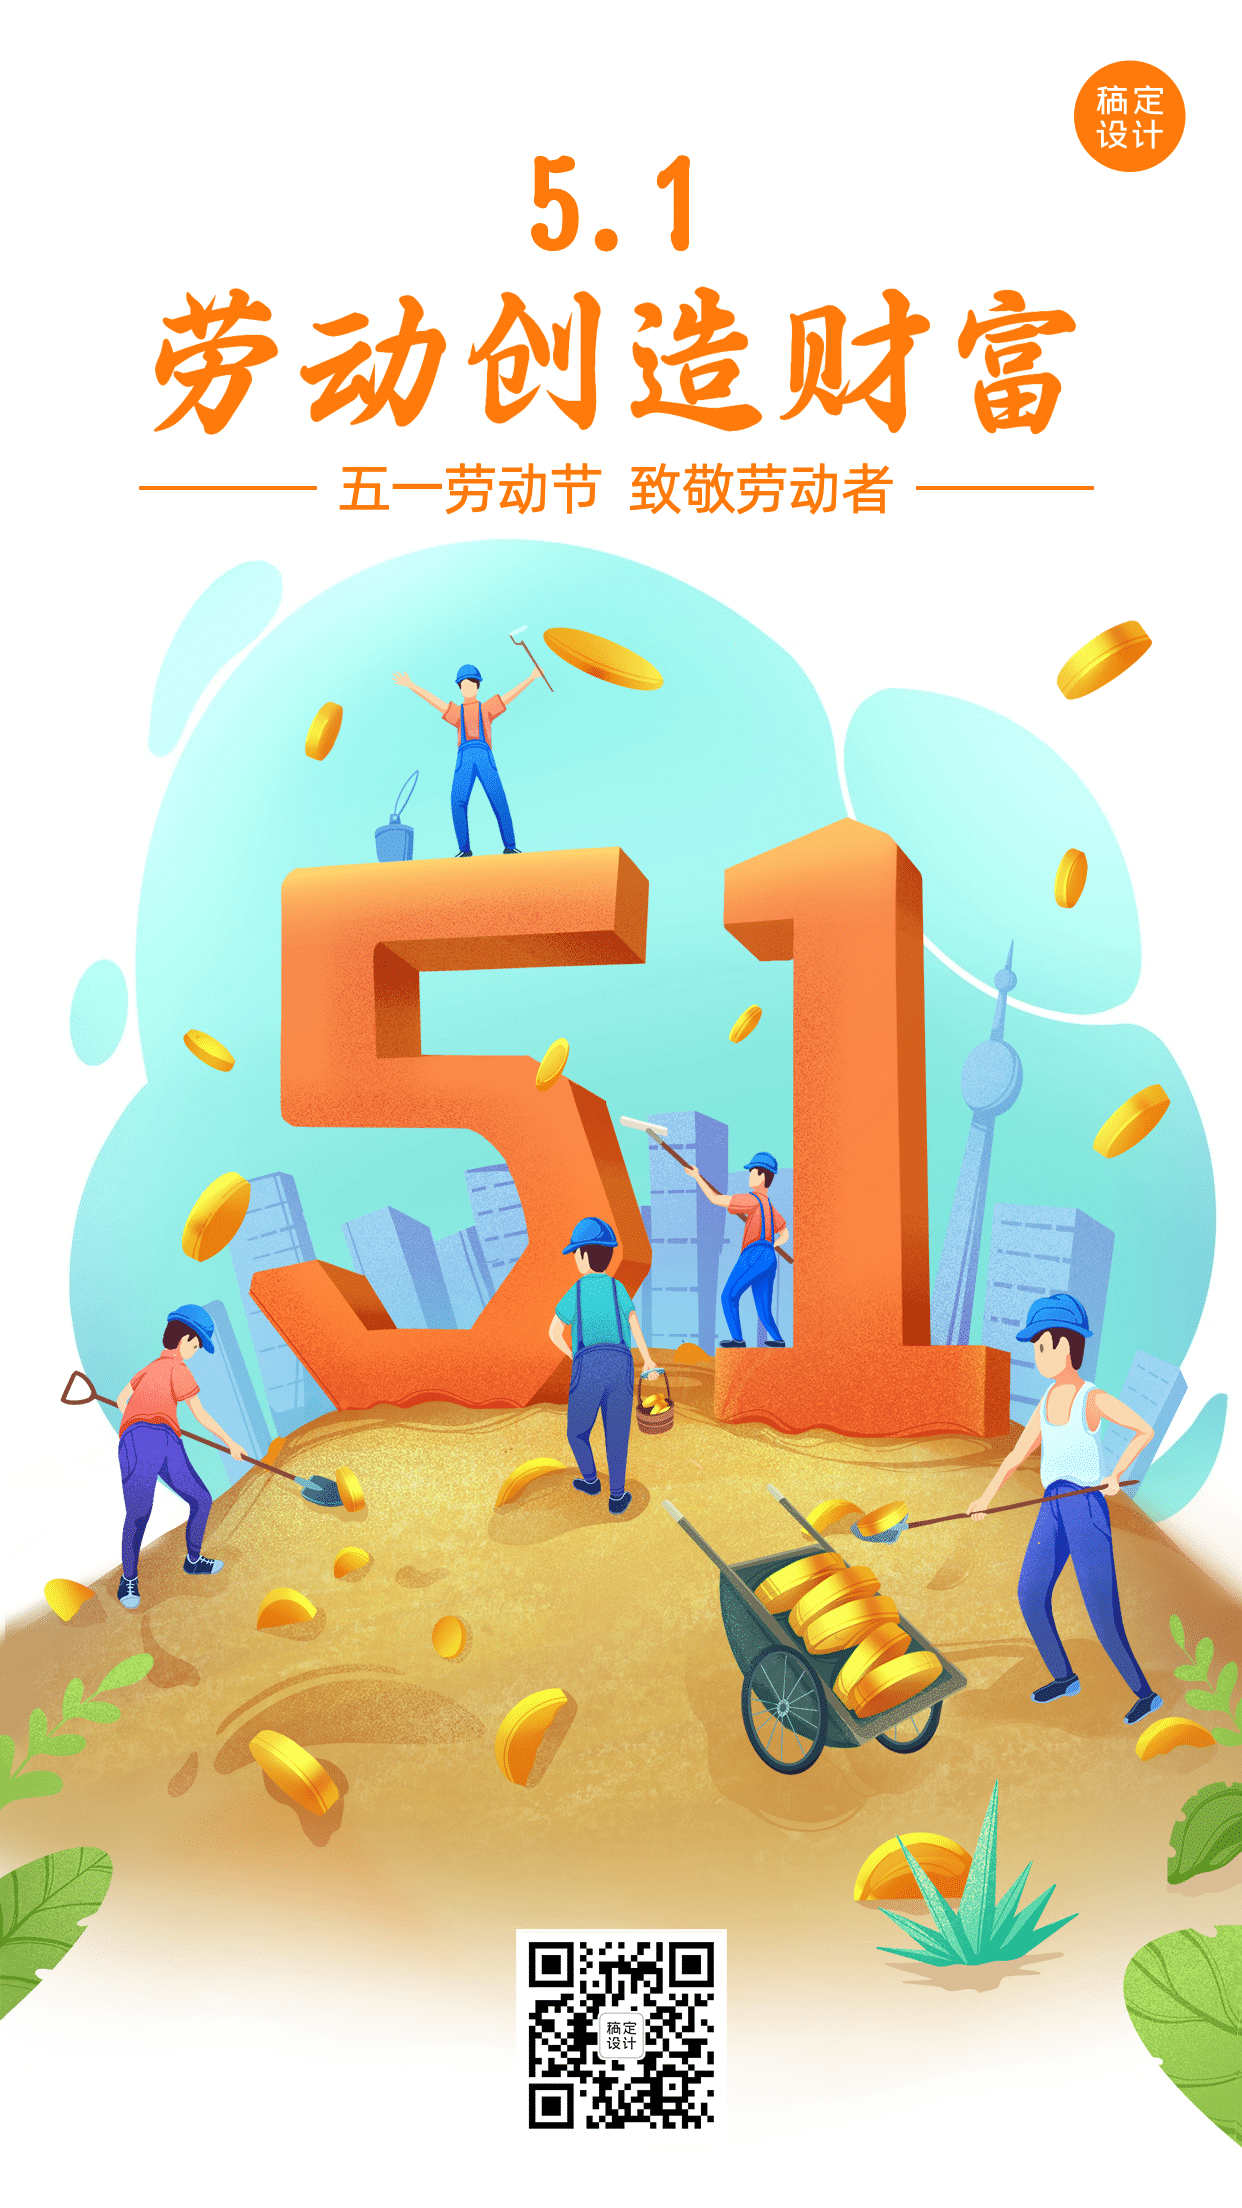 劳动节金融保险宣传推广卡通海报